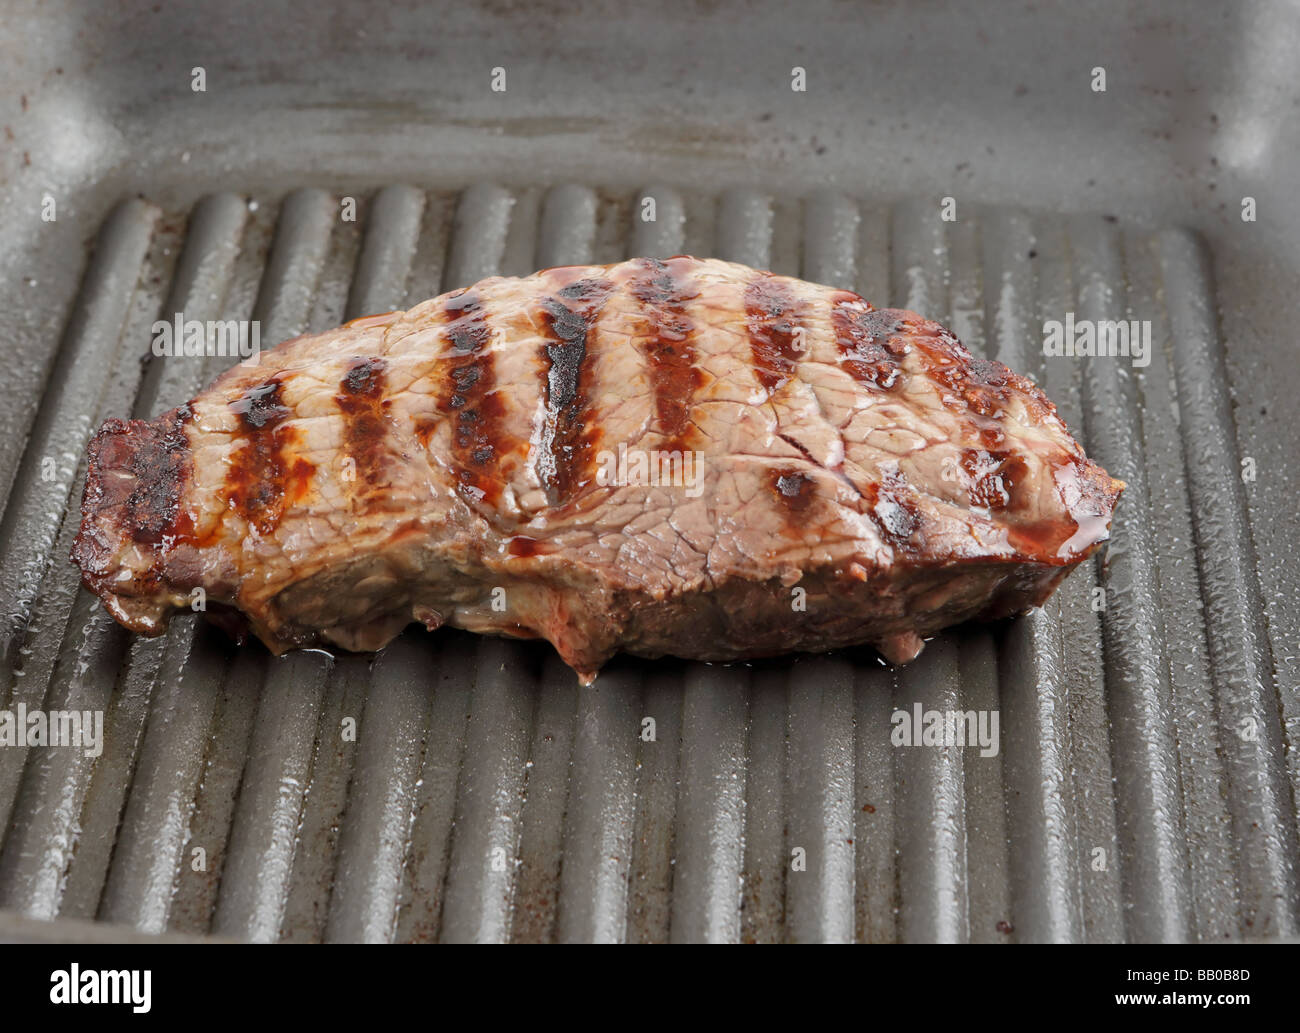 Steak grillé dans une casserole d'être prêt à manger Banque D'Images